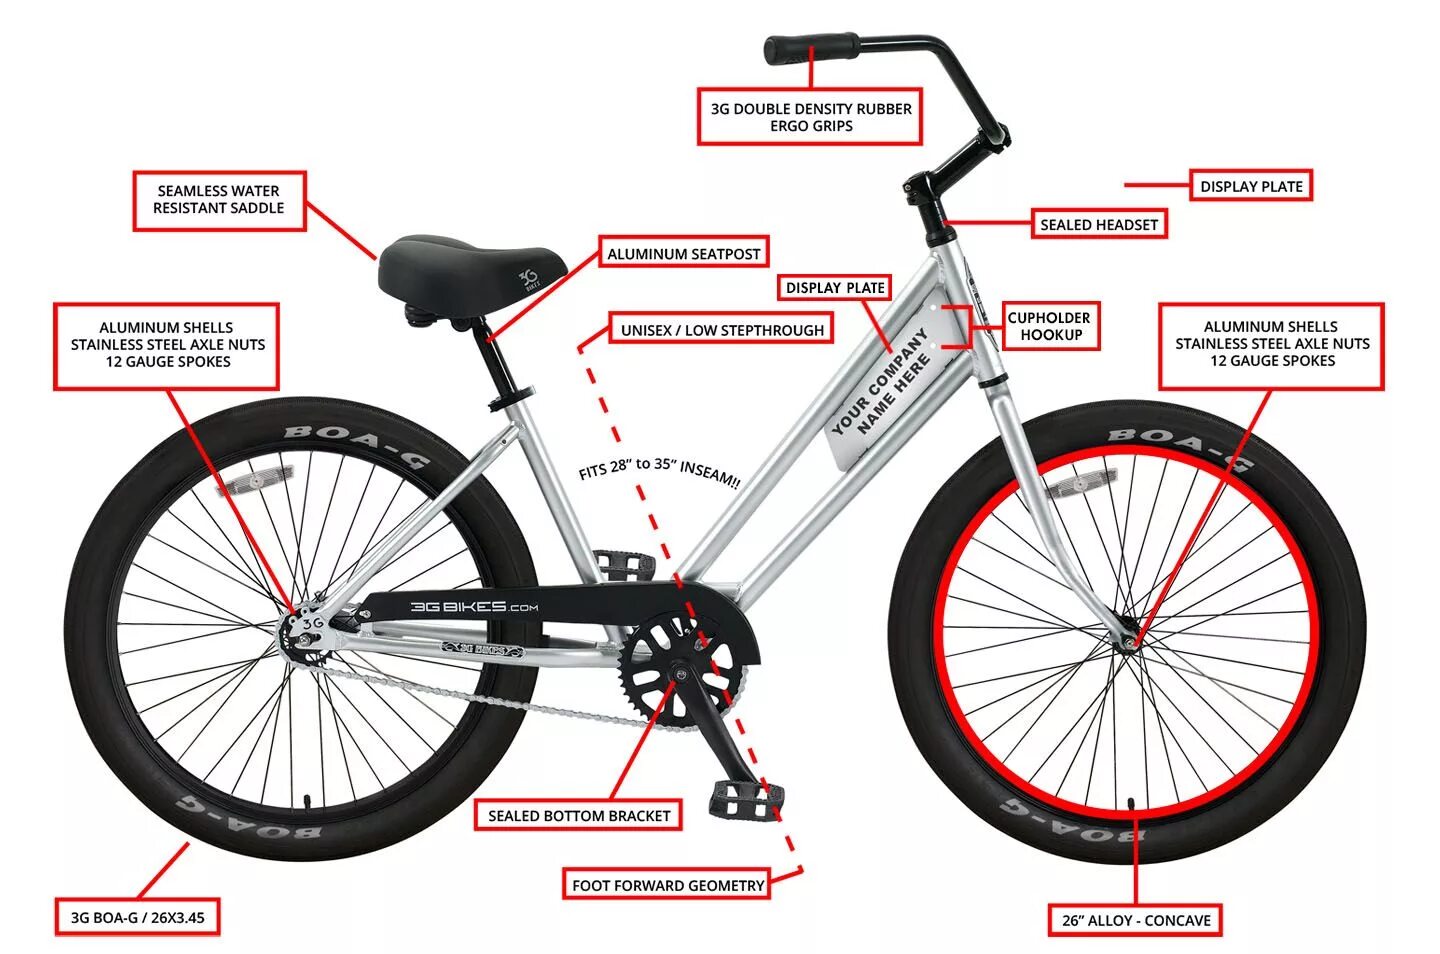 Bike parts. Части велосипеда ВМХ. Название частей велосипеда. Составные части велосипеда. Название запчастей велосипеда.